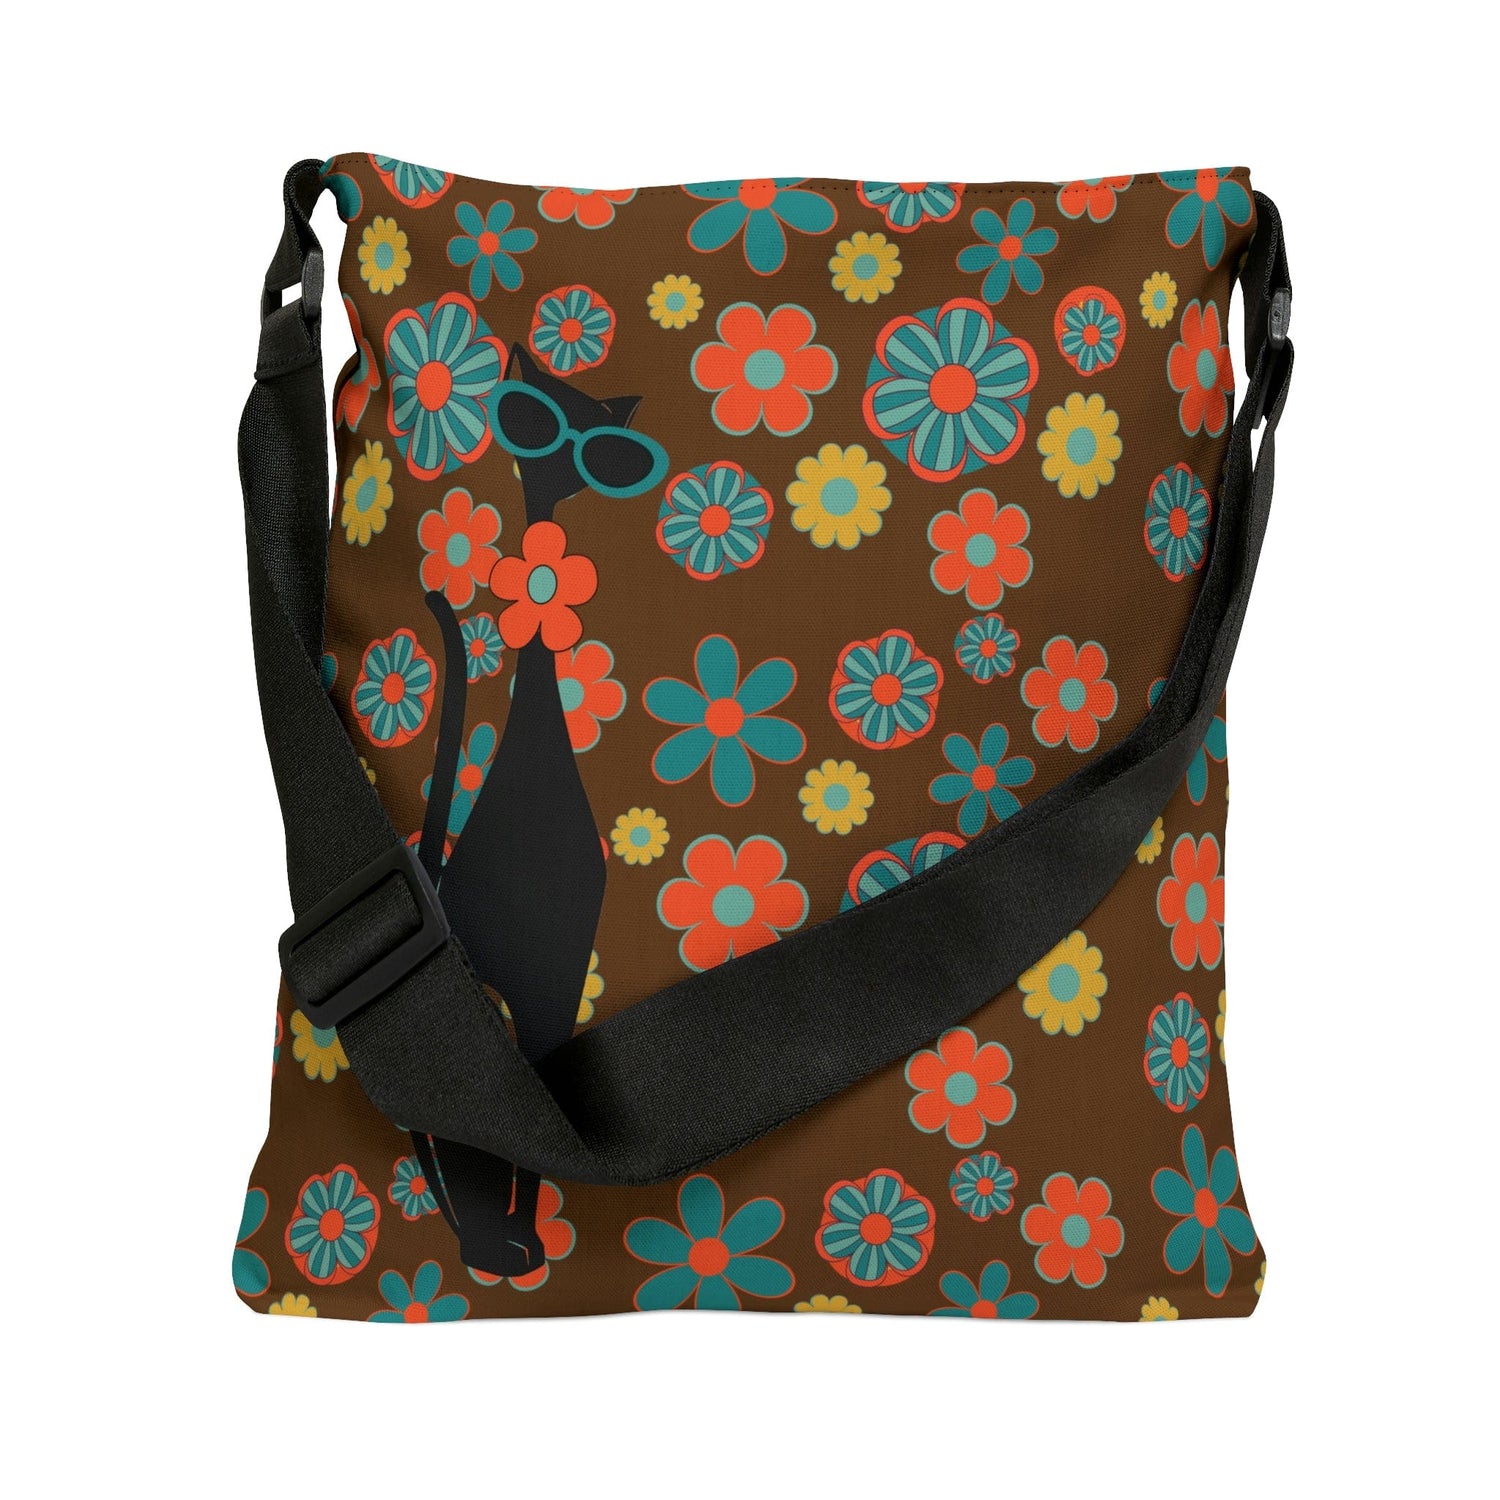 Atomic Cat, Flower Power, Hippie Style, Brown, Orange, Teal Adjustable Tote Bag Bags